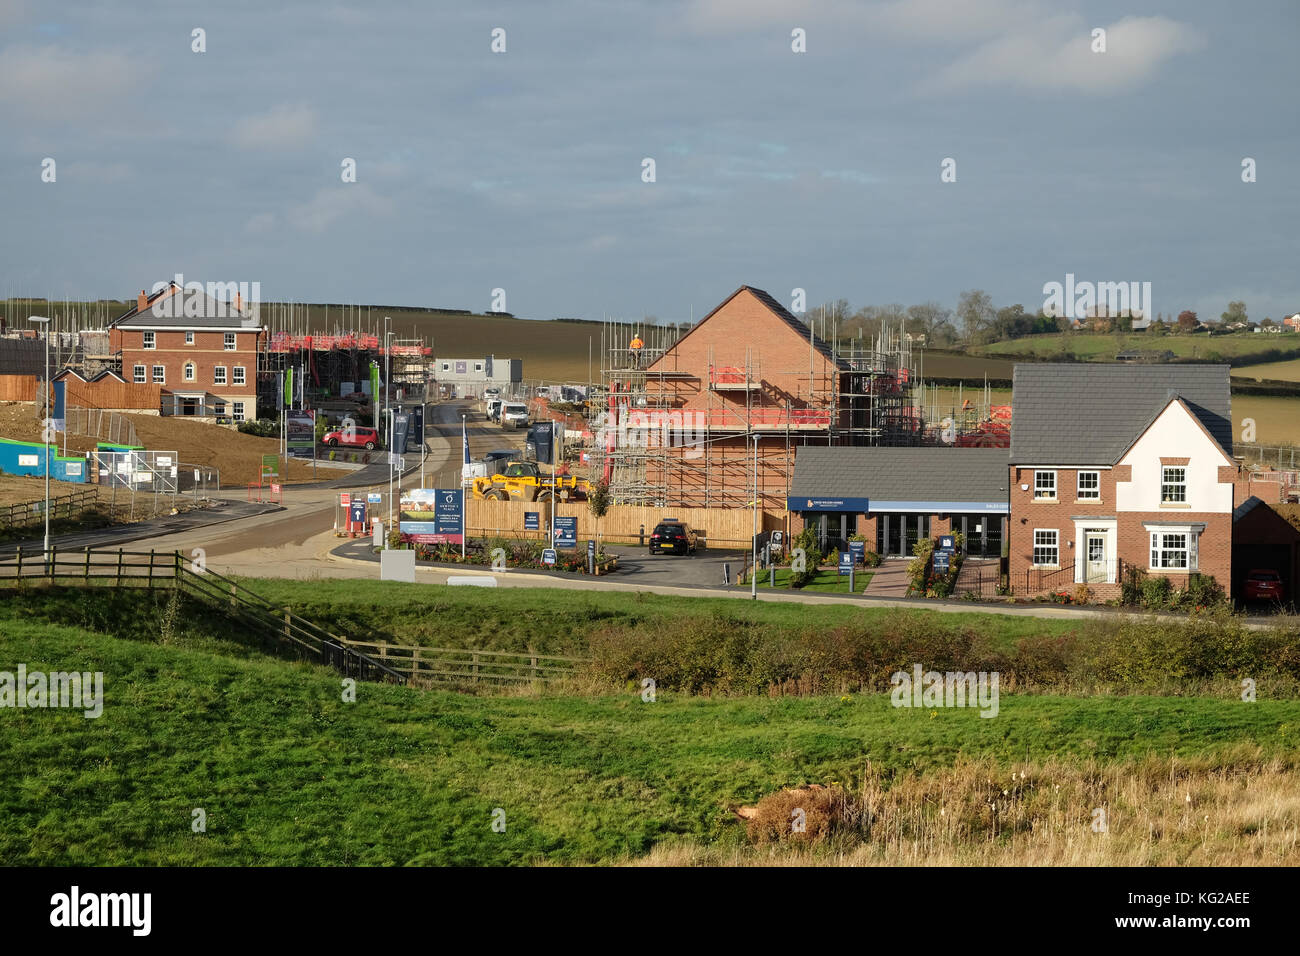 Développement de nouveaux housing estate, Grantham, Lincolnshire, Angleterre, Royaume-Uni. Banque D'Images